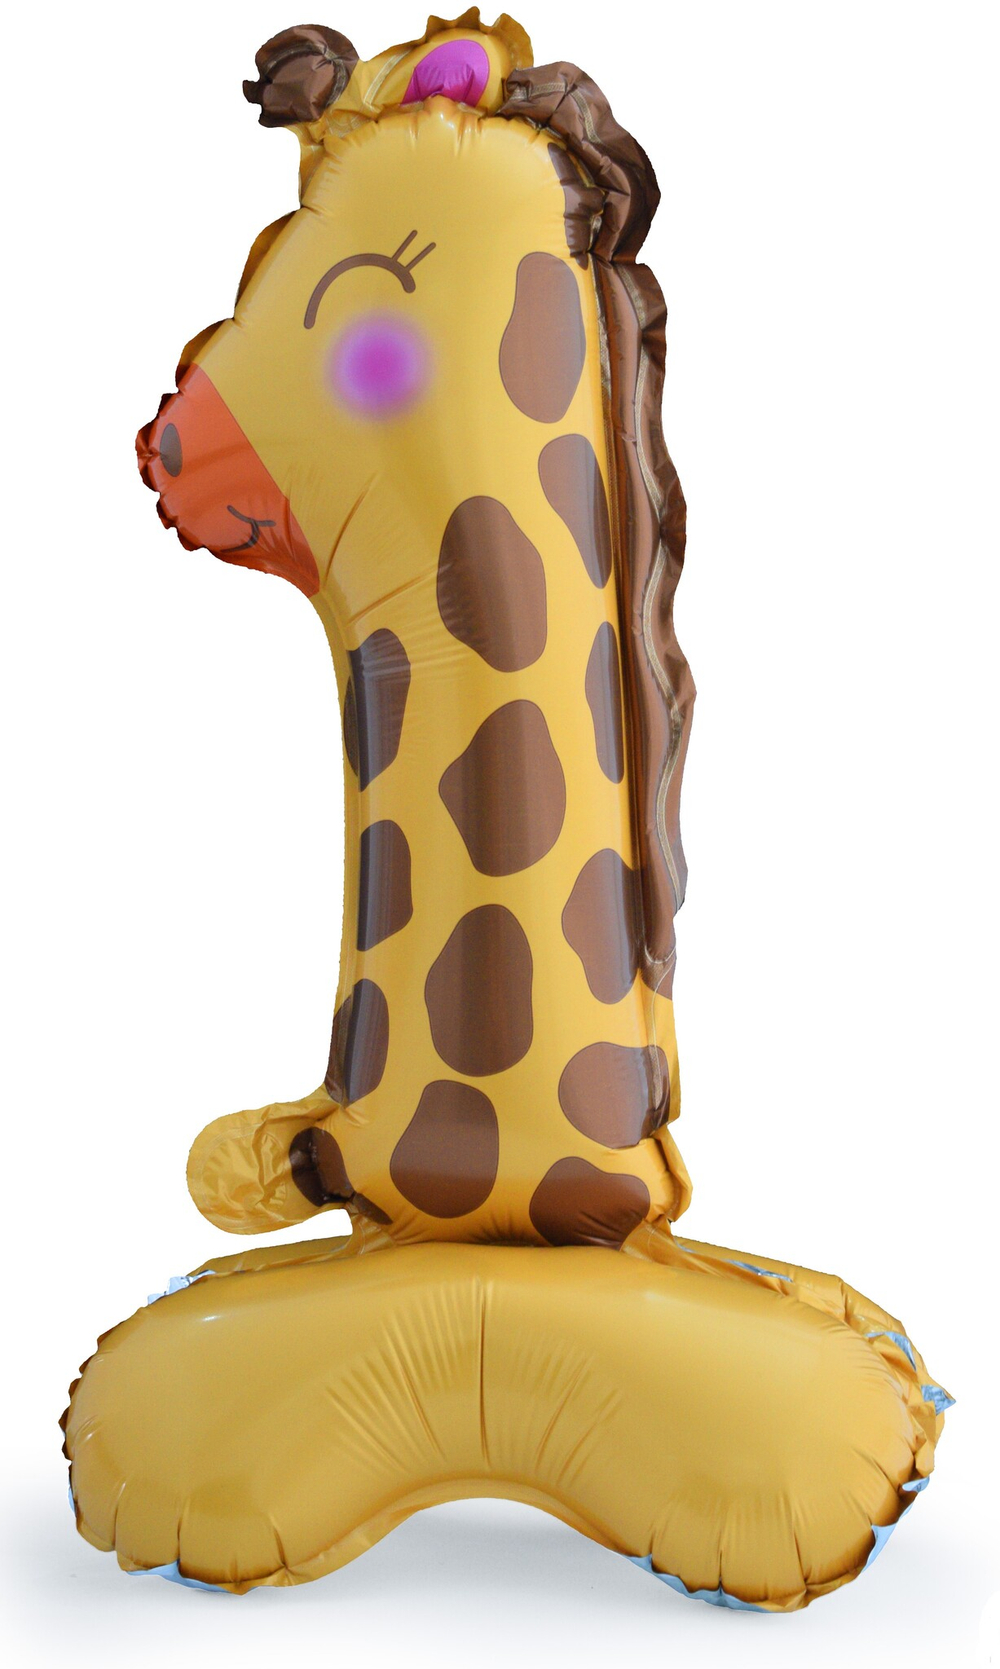 Цифра-шар на подставке с воздухом №1 в виде жирафа